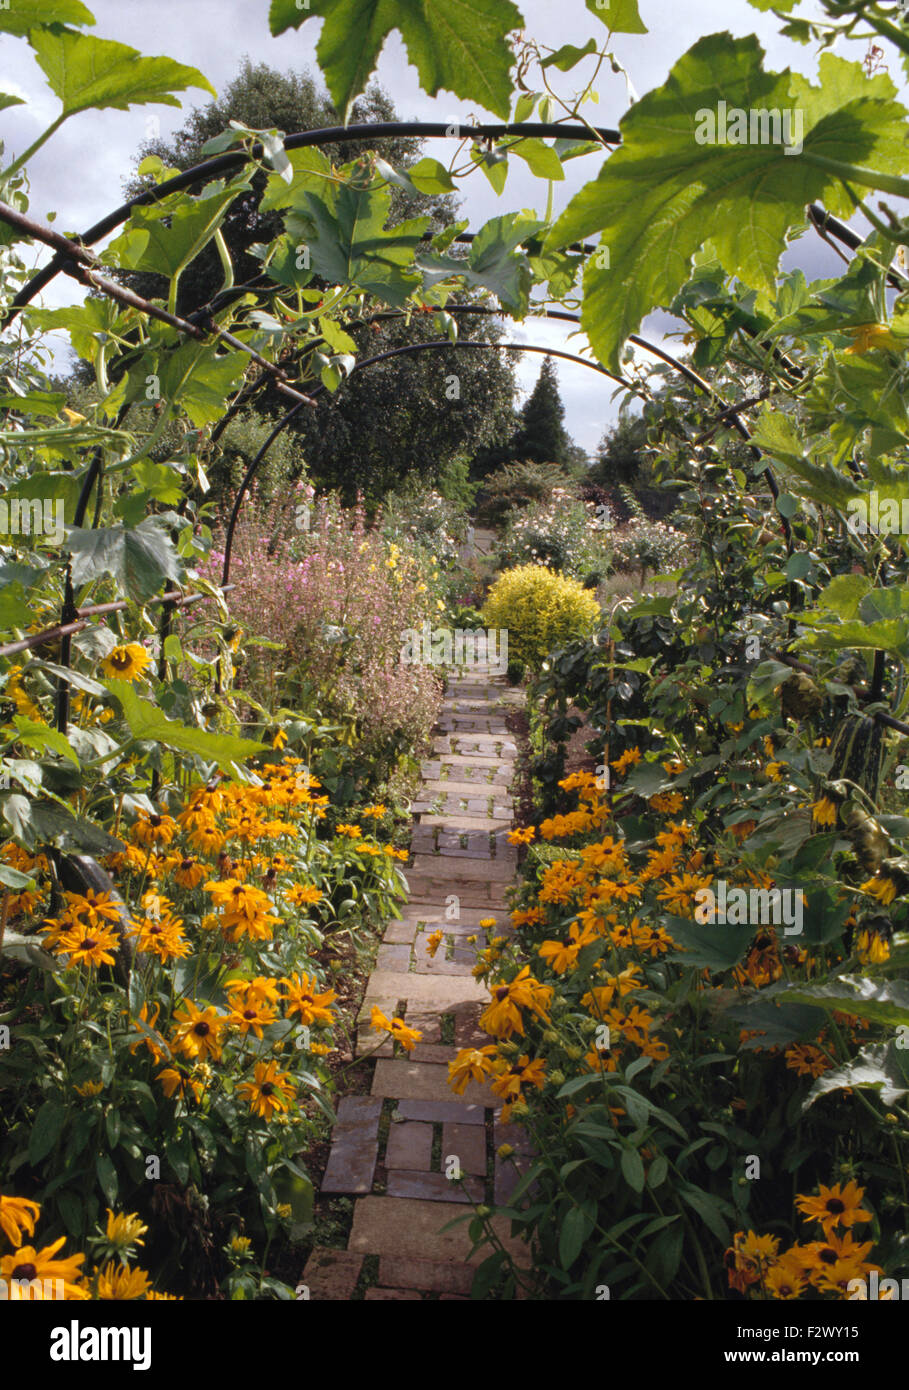 Di colore giallo brillante rudbeckia cresce su entrambi i lati del sentiero lastricato attraverso potager garden Foto Stock